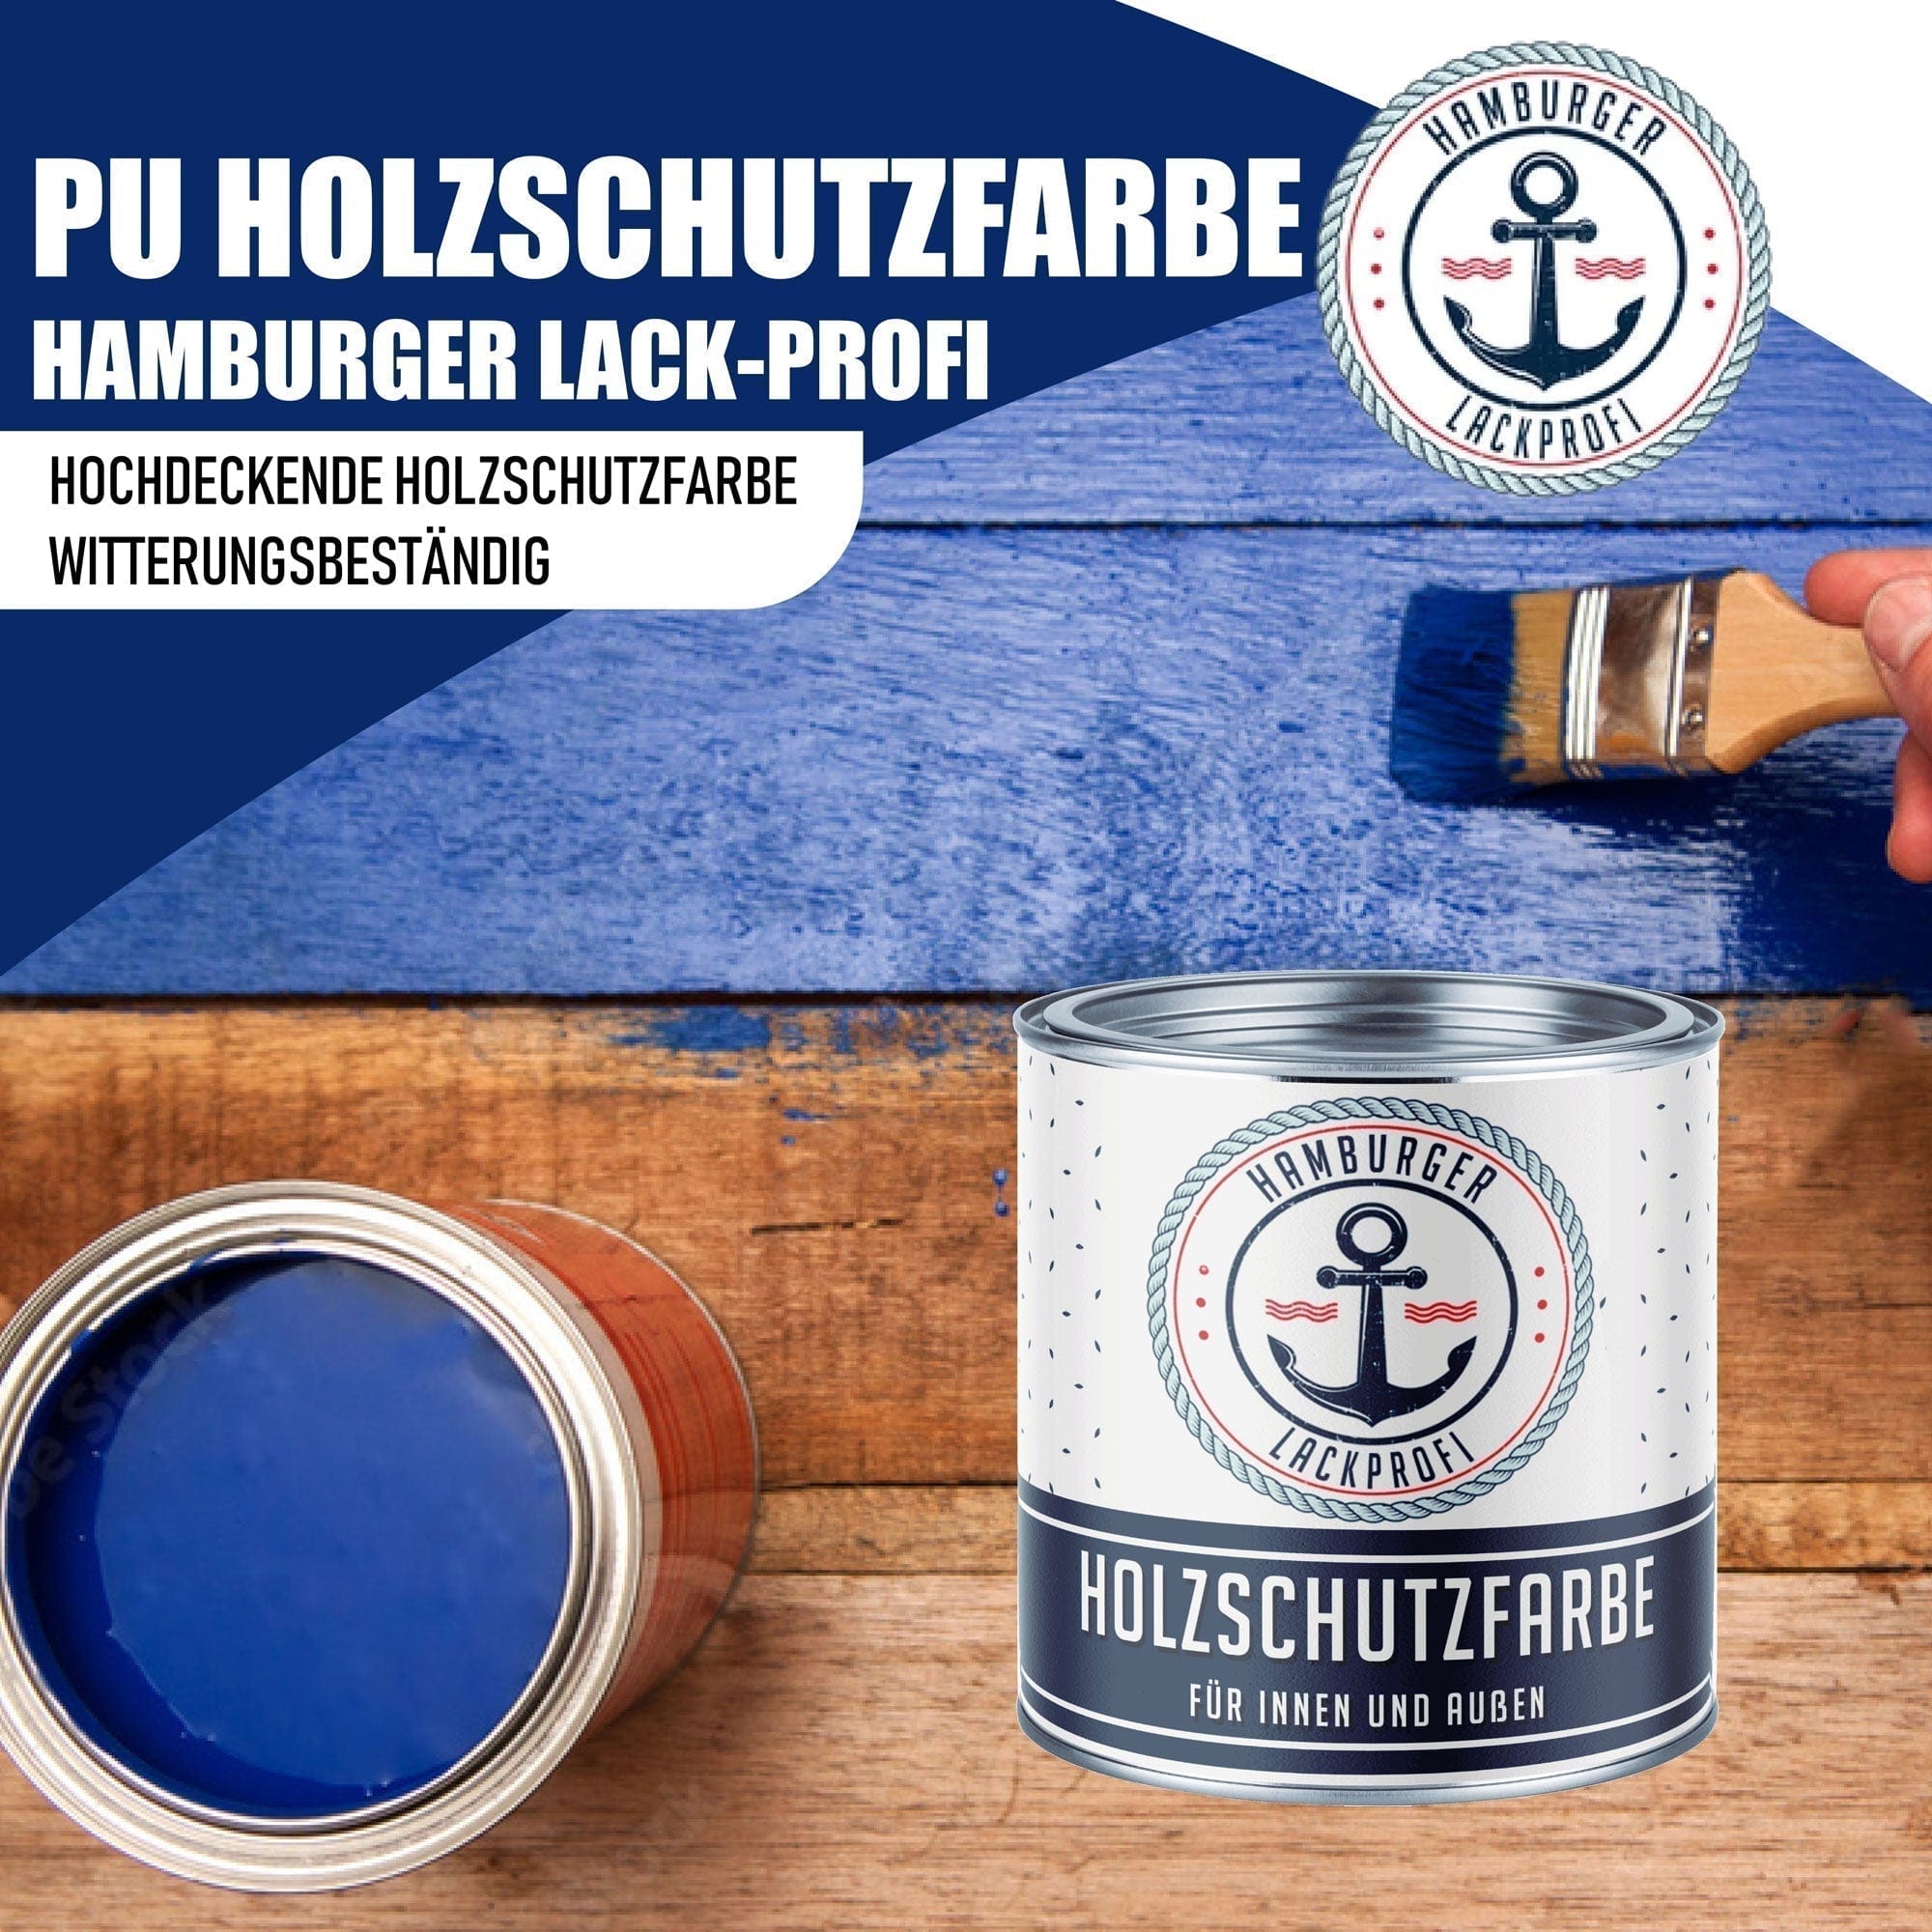 Hamburger Lack-Profi Lacke & Beschichtungen PU Holzschutzfarbe RAL 3007 Schwarzrot - Wetterschutzfarbe